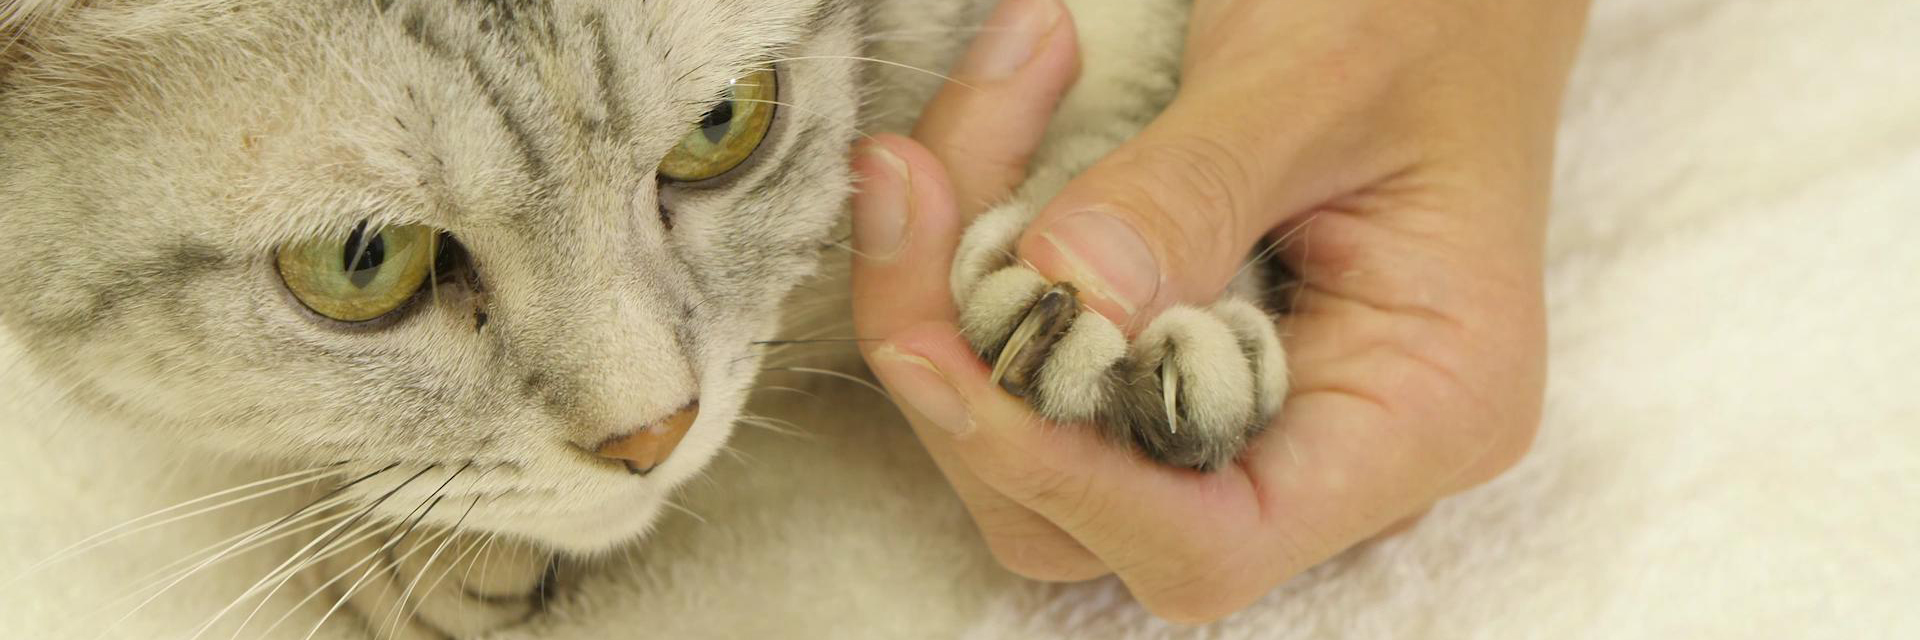 動画でわかる 猫の爪切りのコツをプロが解説 爪の中を通る血管と神経を切らないように注意して ライオン商事株式会社